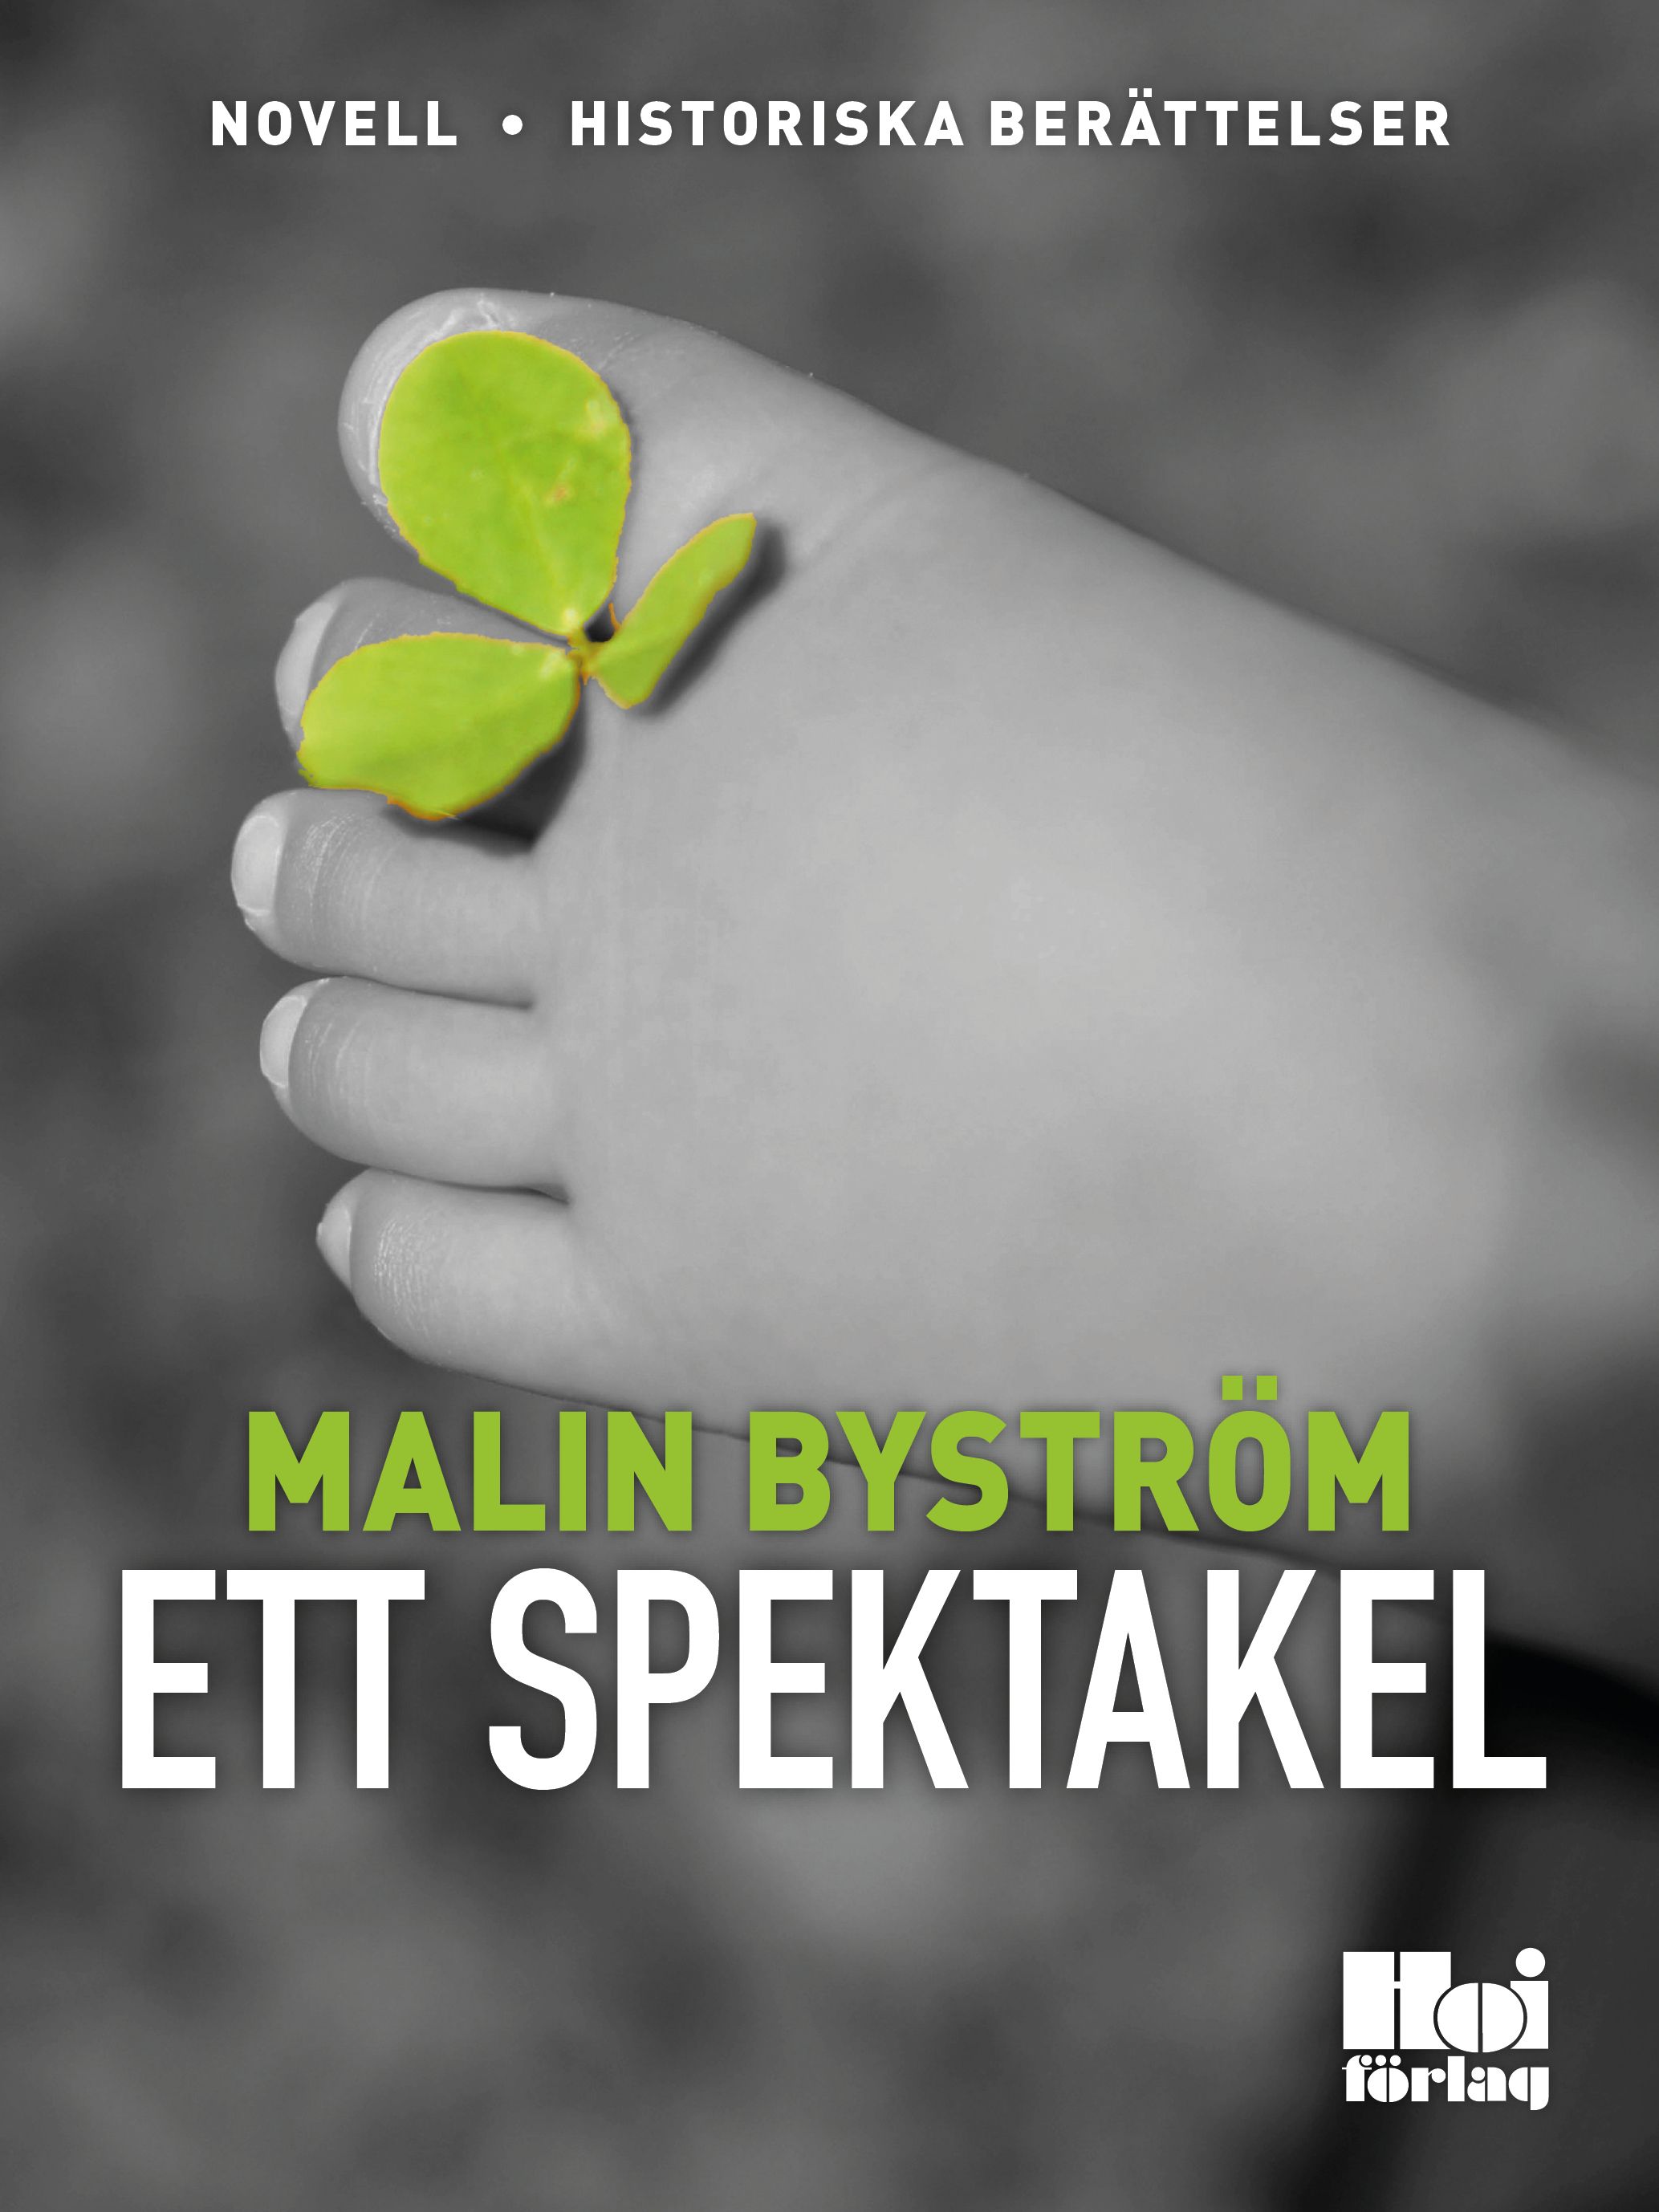 Ett spektakel, e-bok av Malin Byström